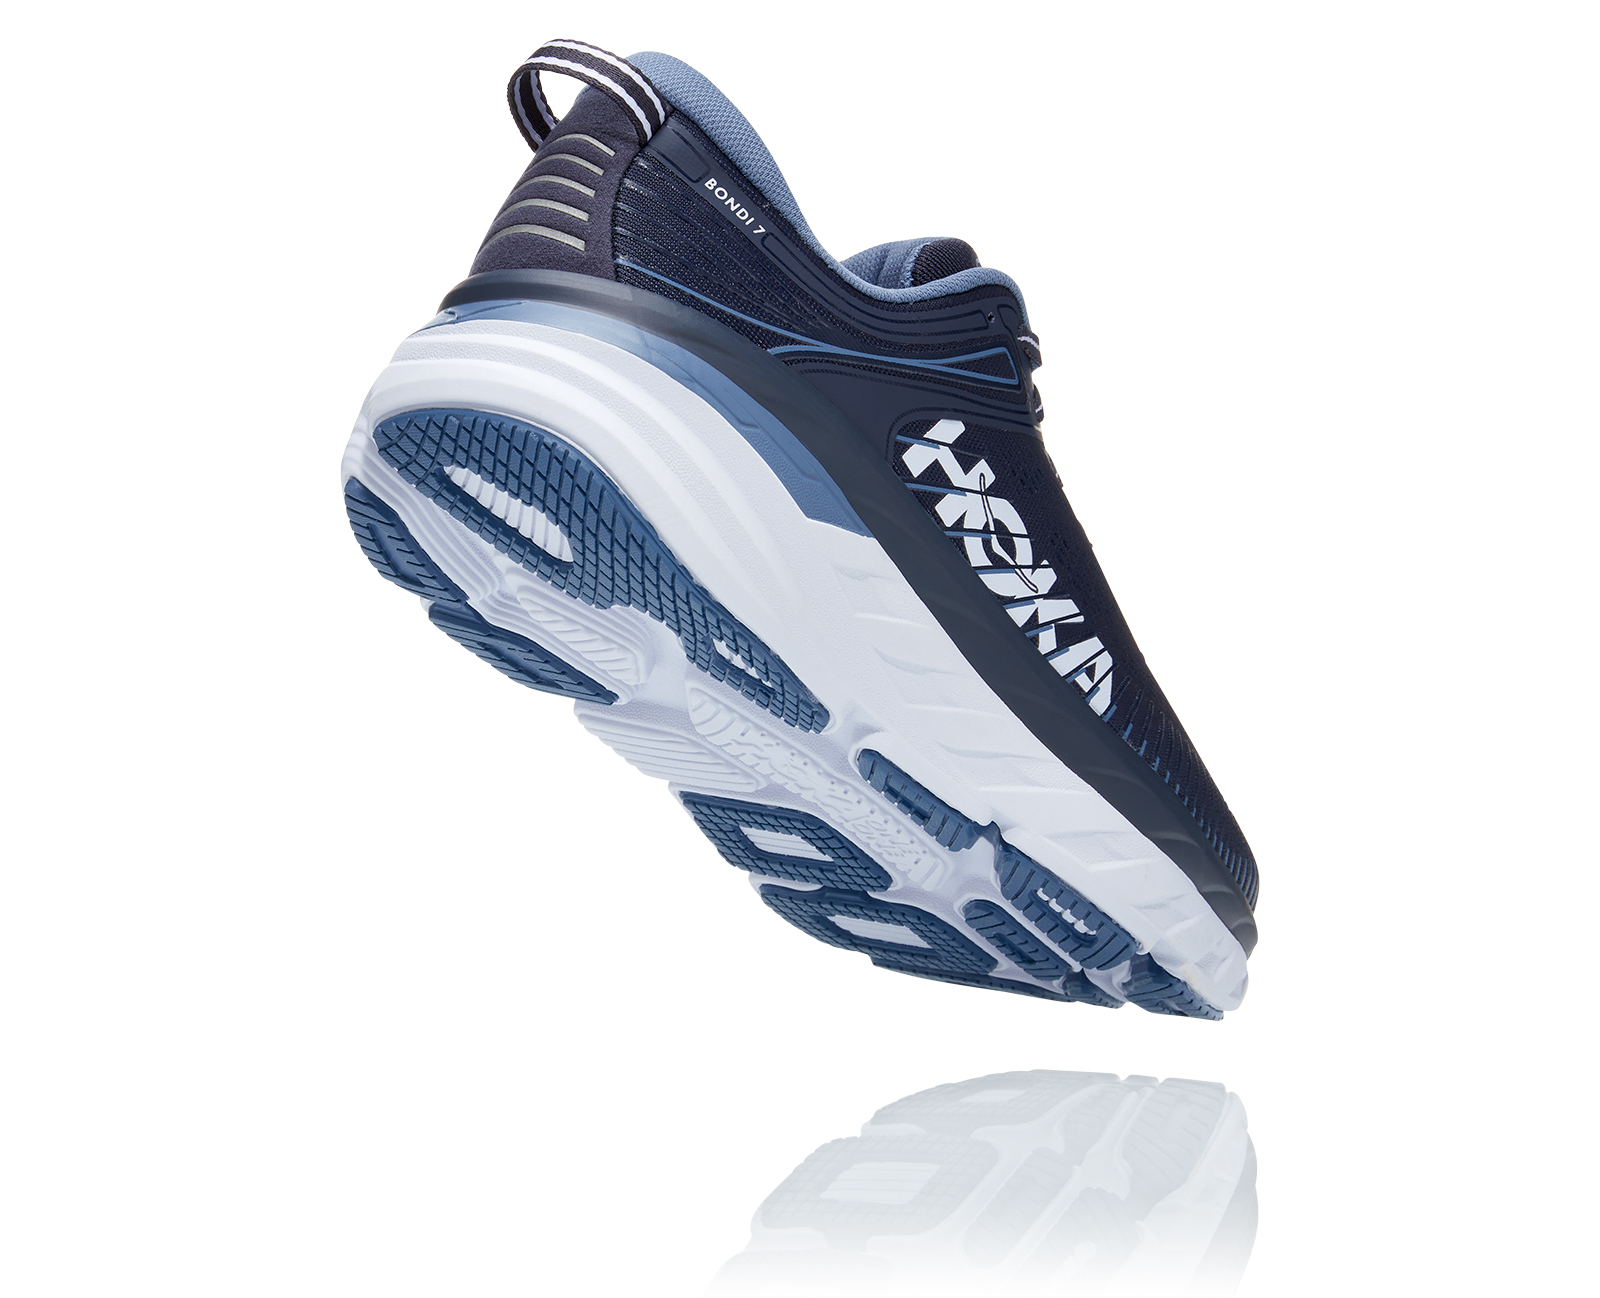 Buy Men's Bondi 7 - Hoka One One Athletic Shoes - Hoka One One 